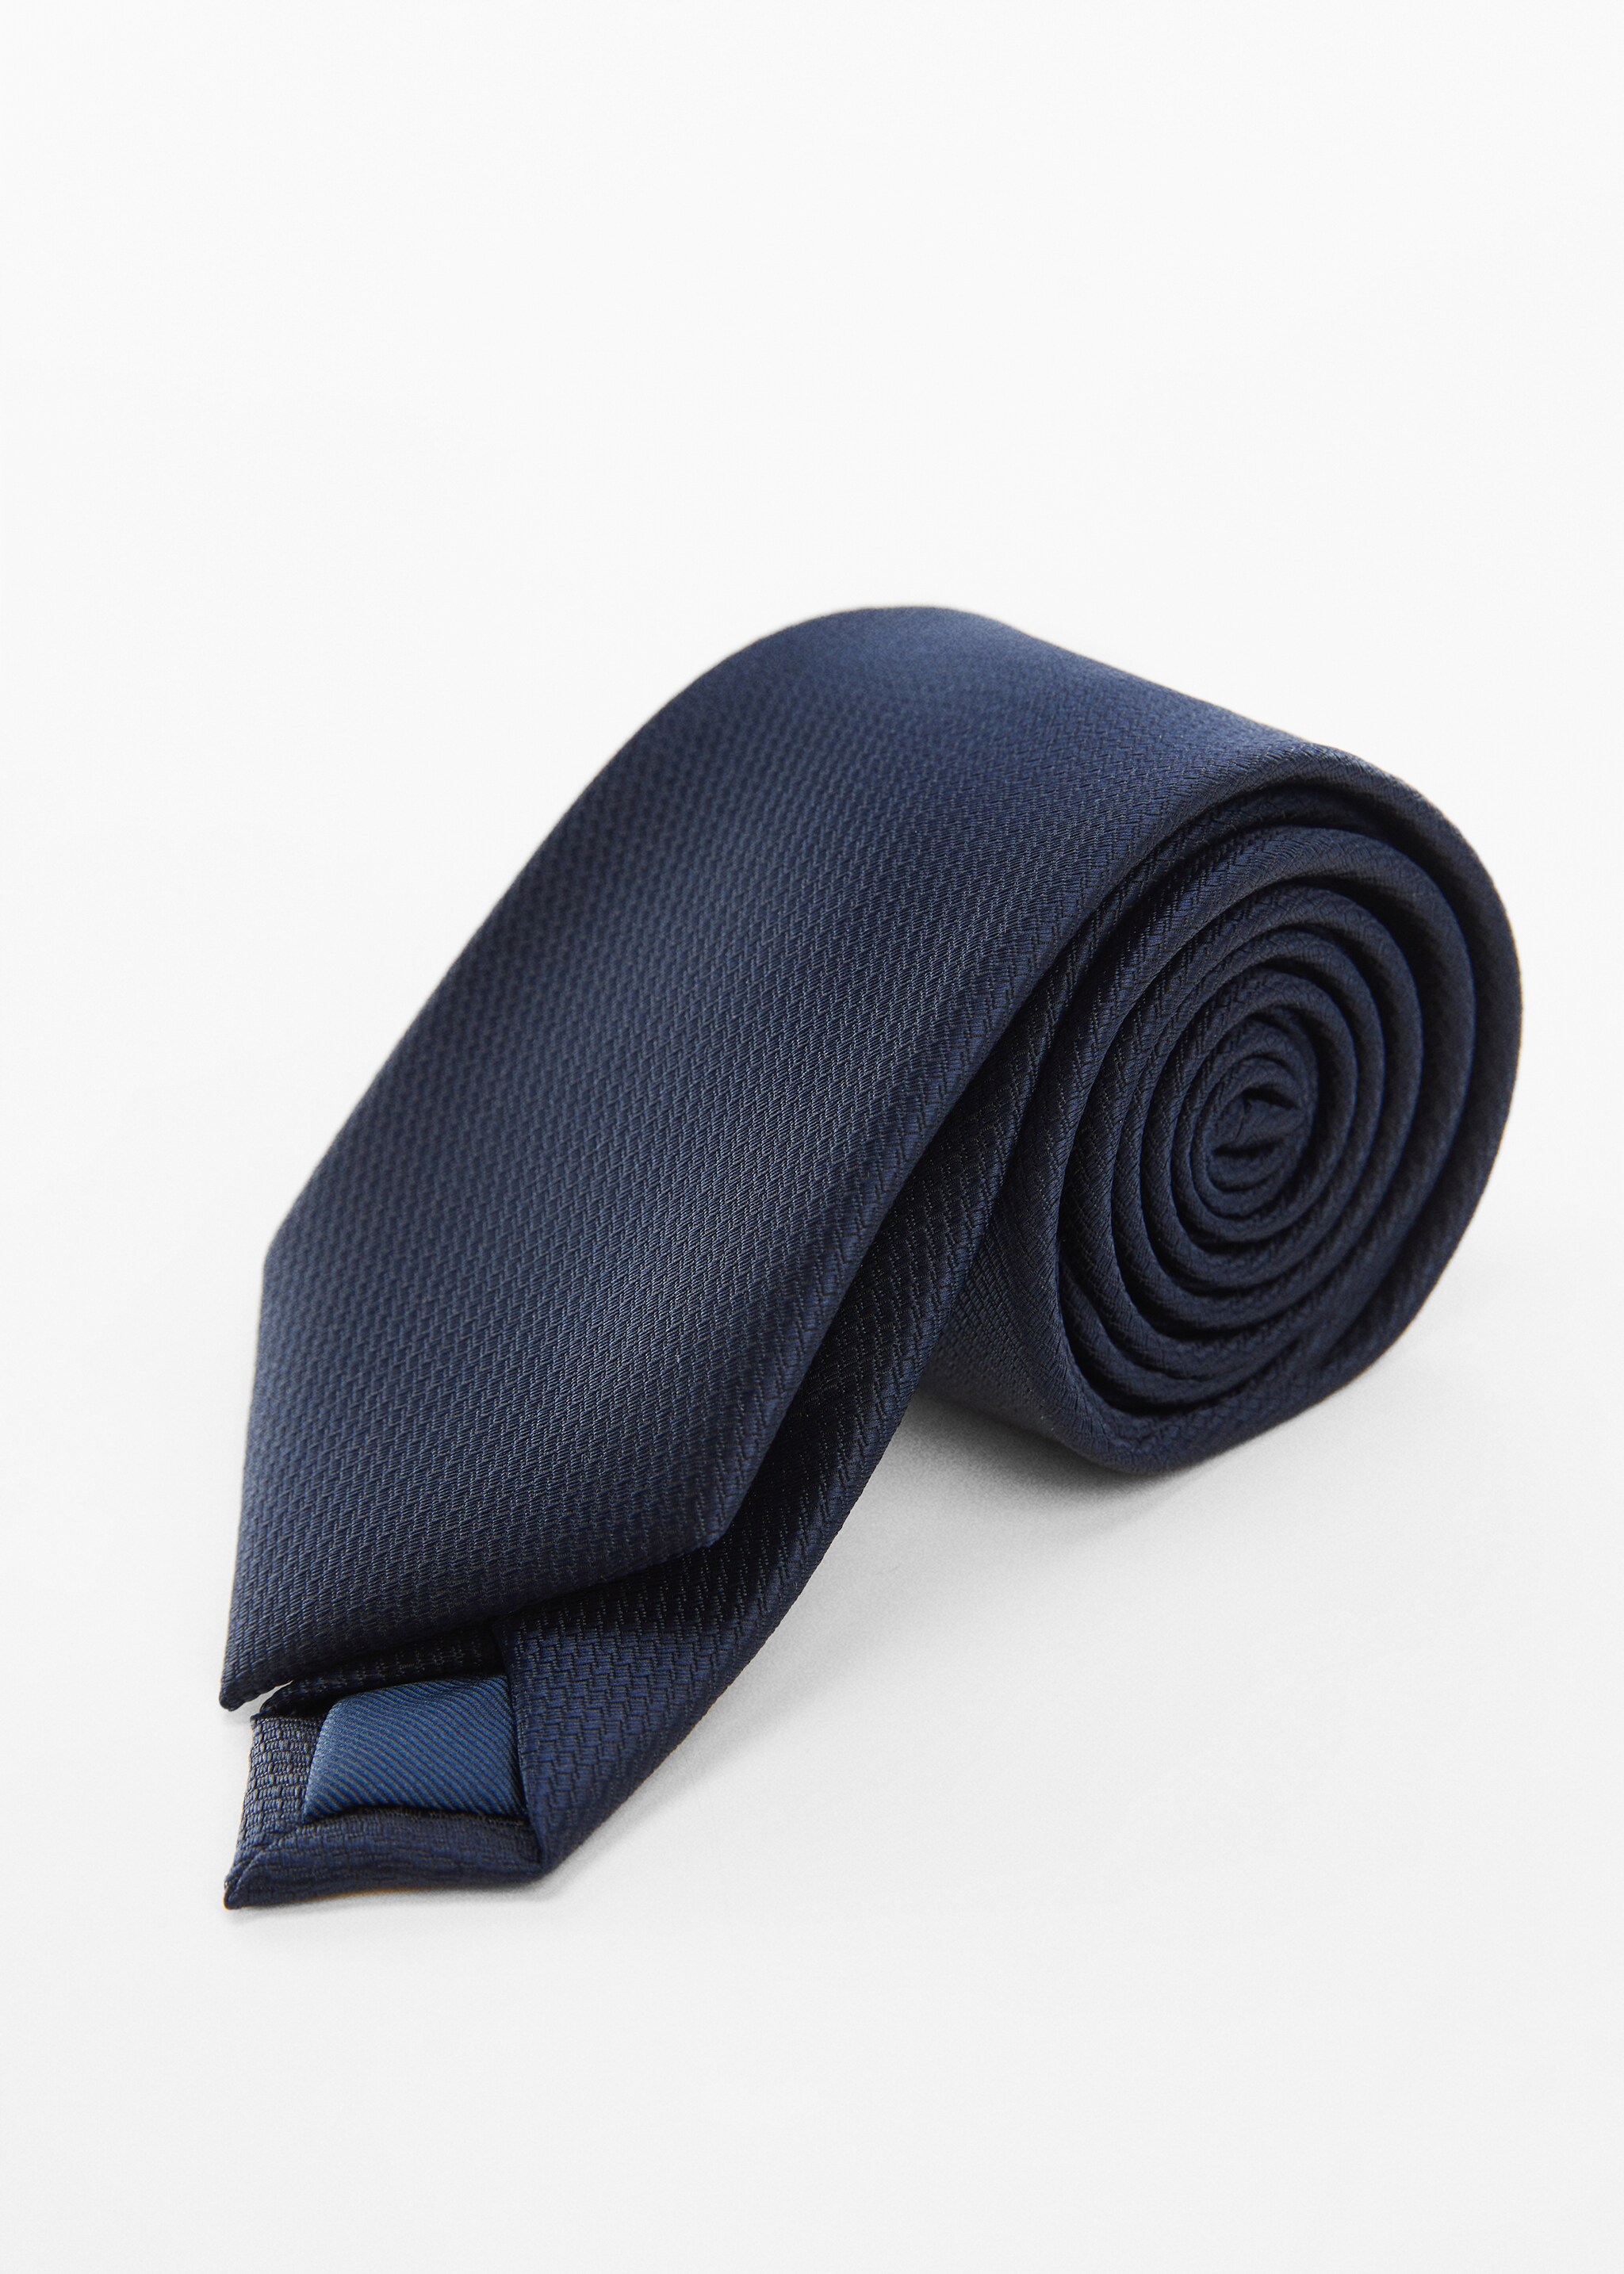 Δομημένη γραβάτα με ιδιότητες κατά του τσαλακώματος - Μεσαίο πλάνο